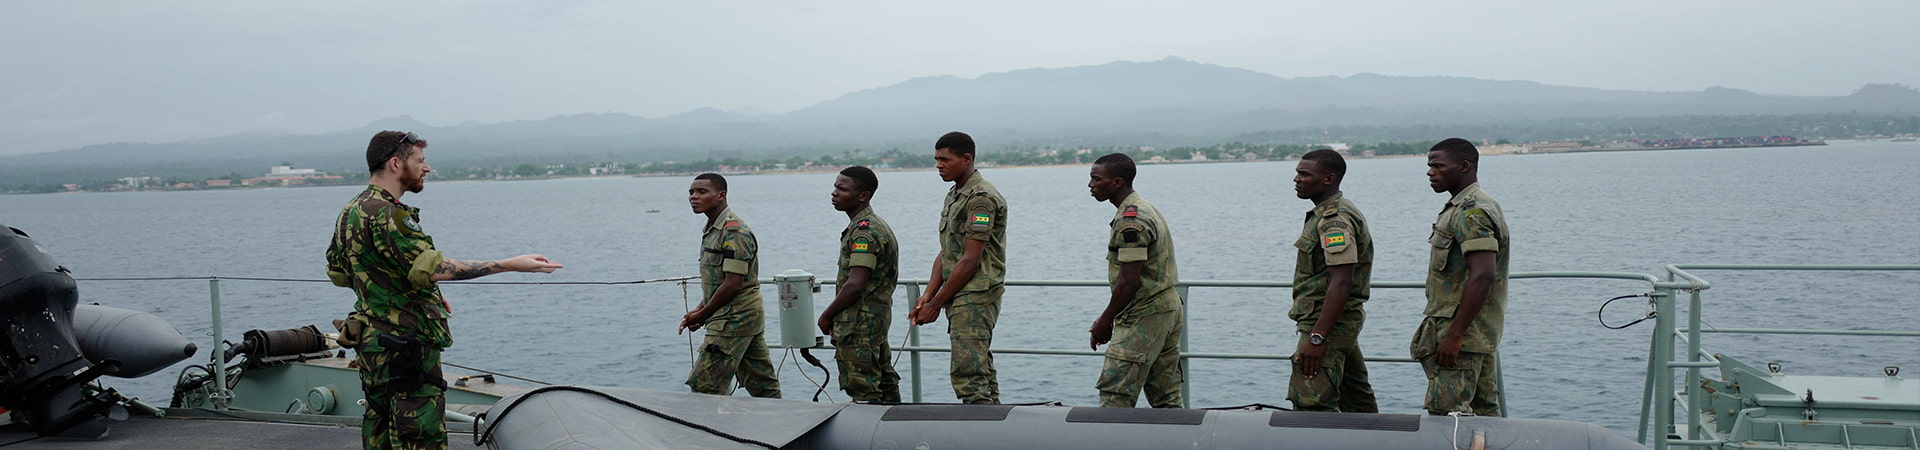 Imagem de Militares em Instrução num navio